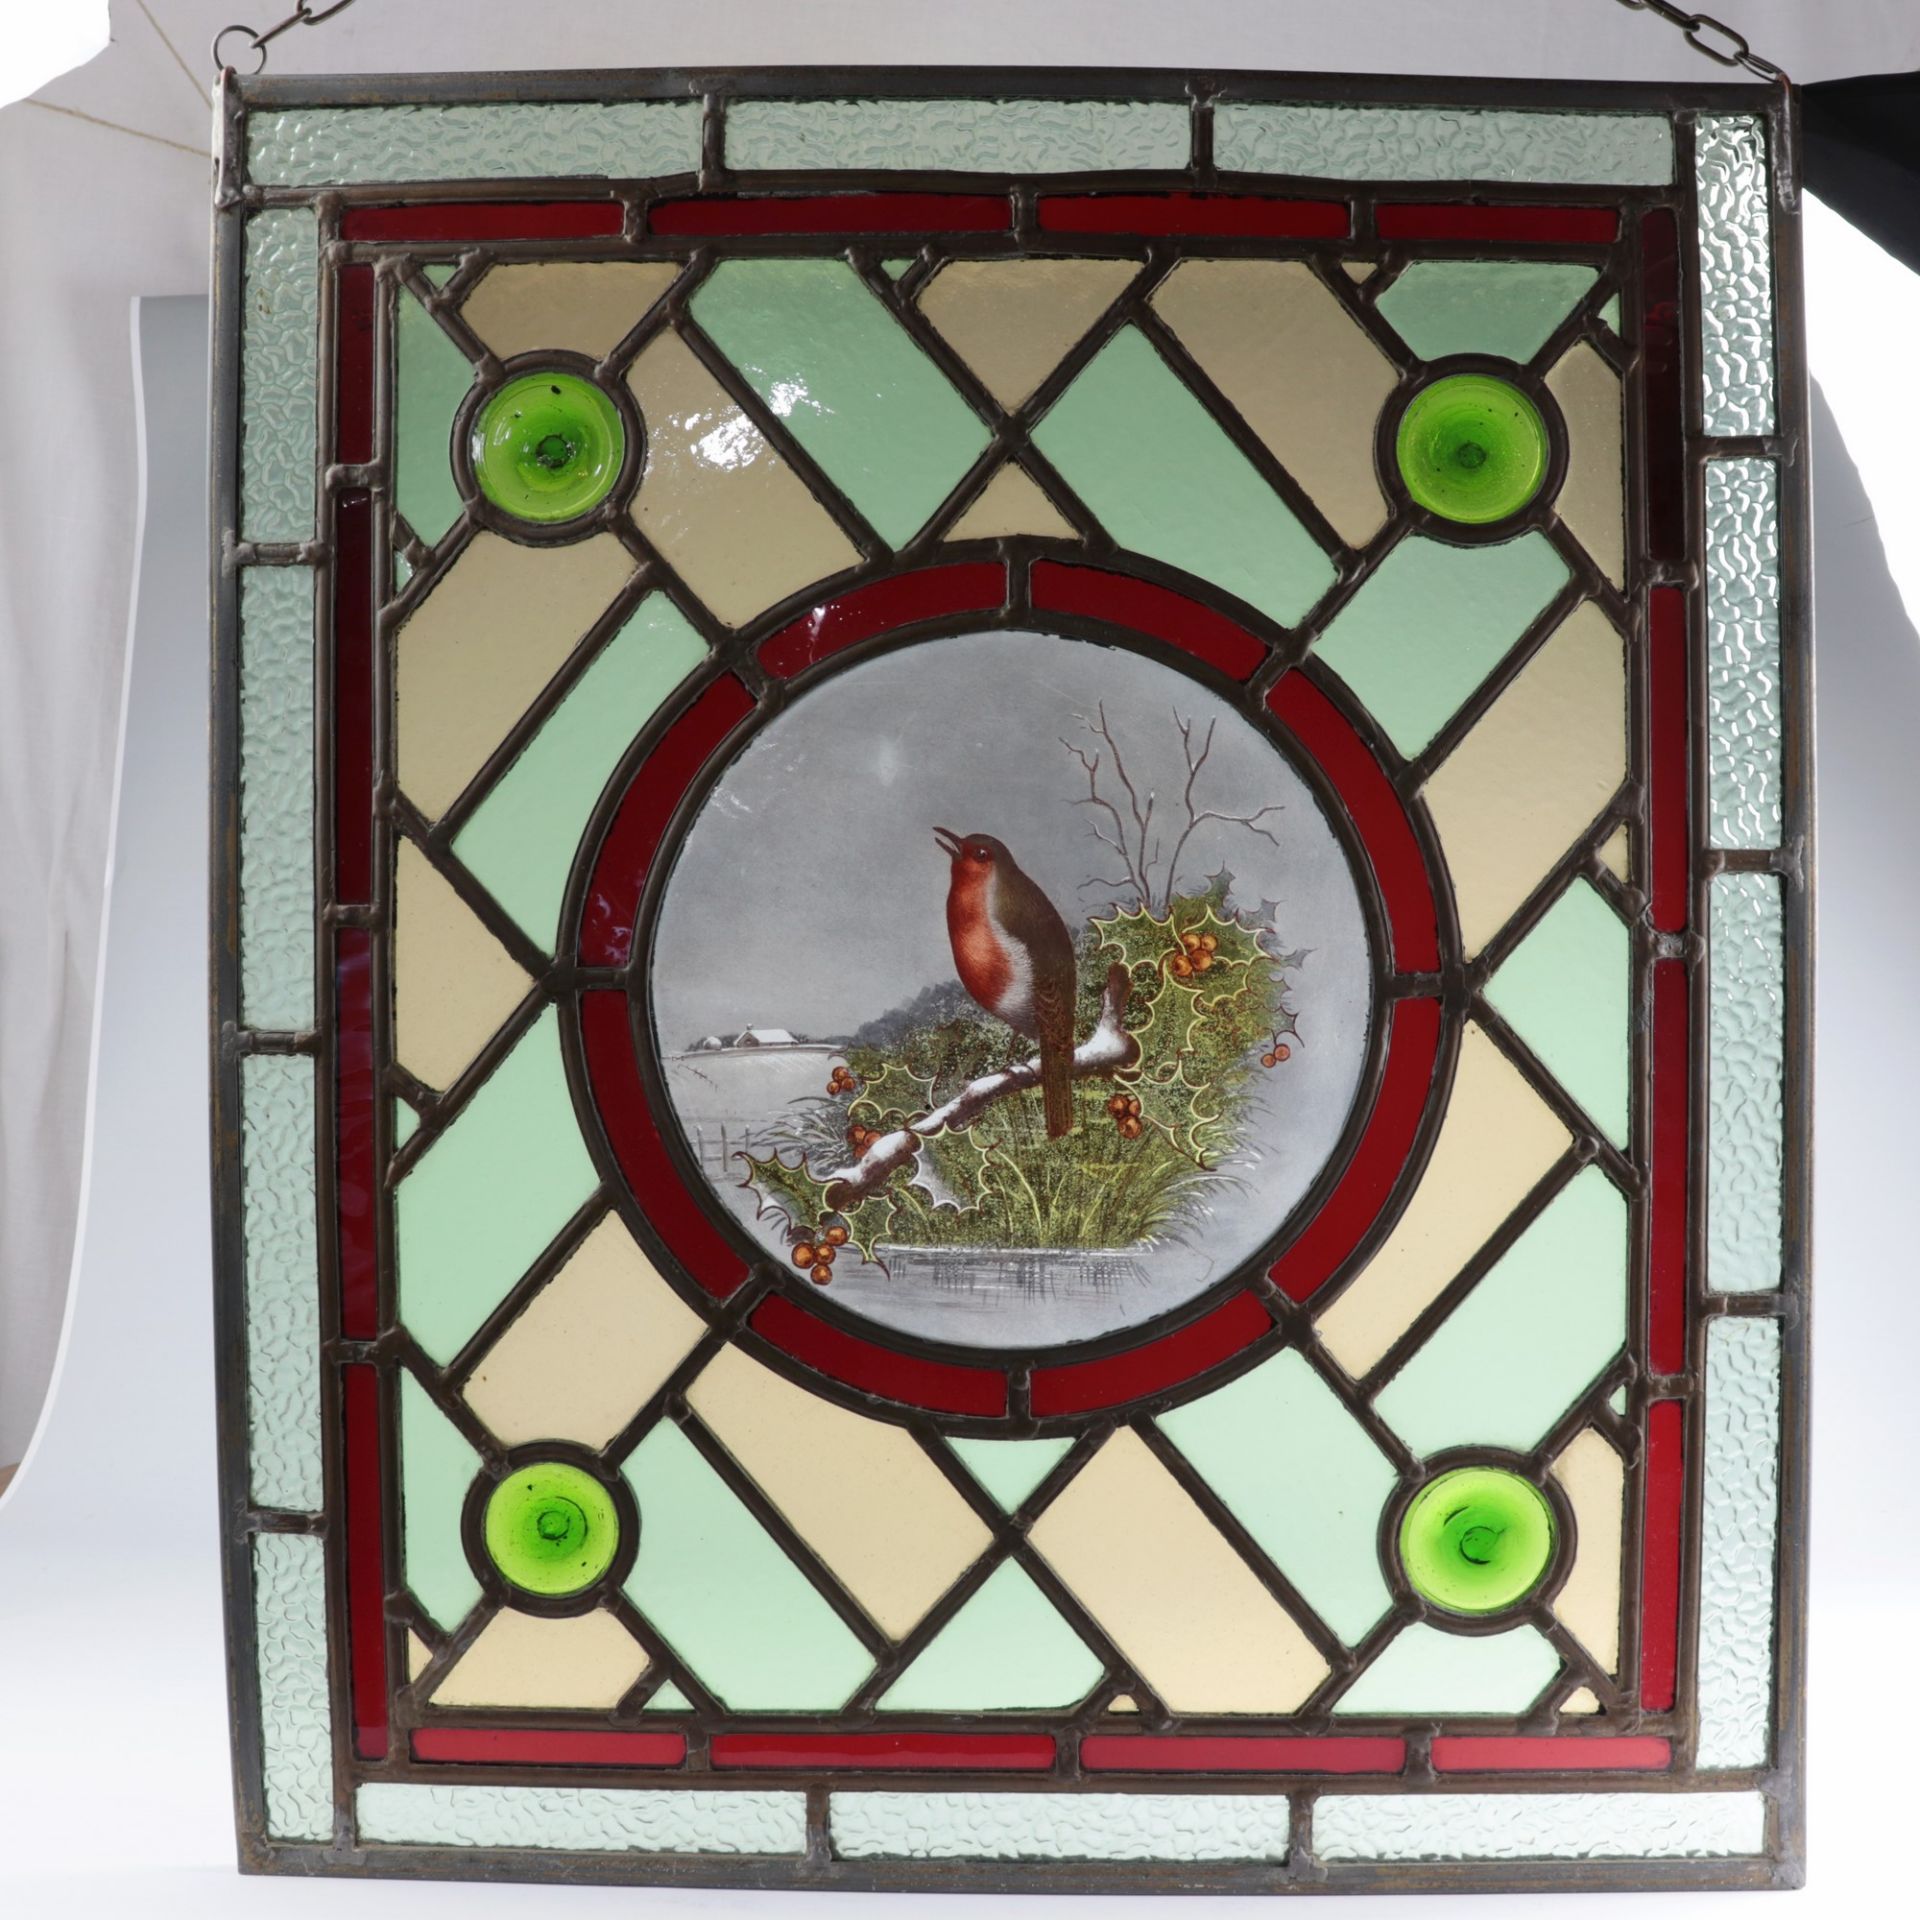 Glasfenster um 1900, farblose u. polychrome Bleiverglasung in rechteckiger Metallrahmung, außen - Image 2 of 4